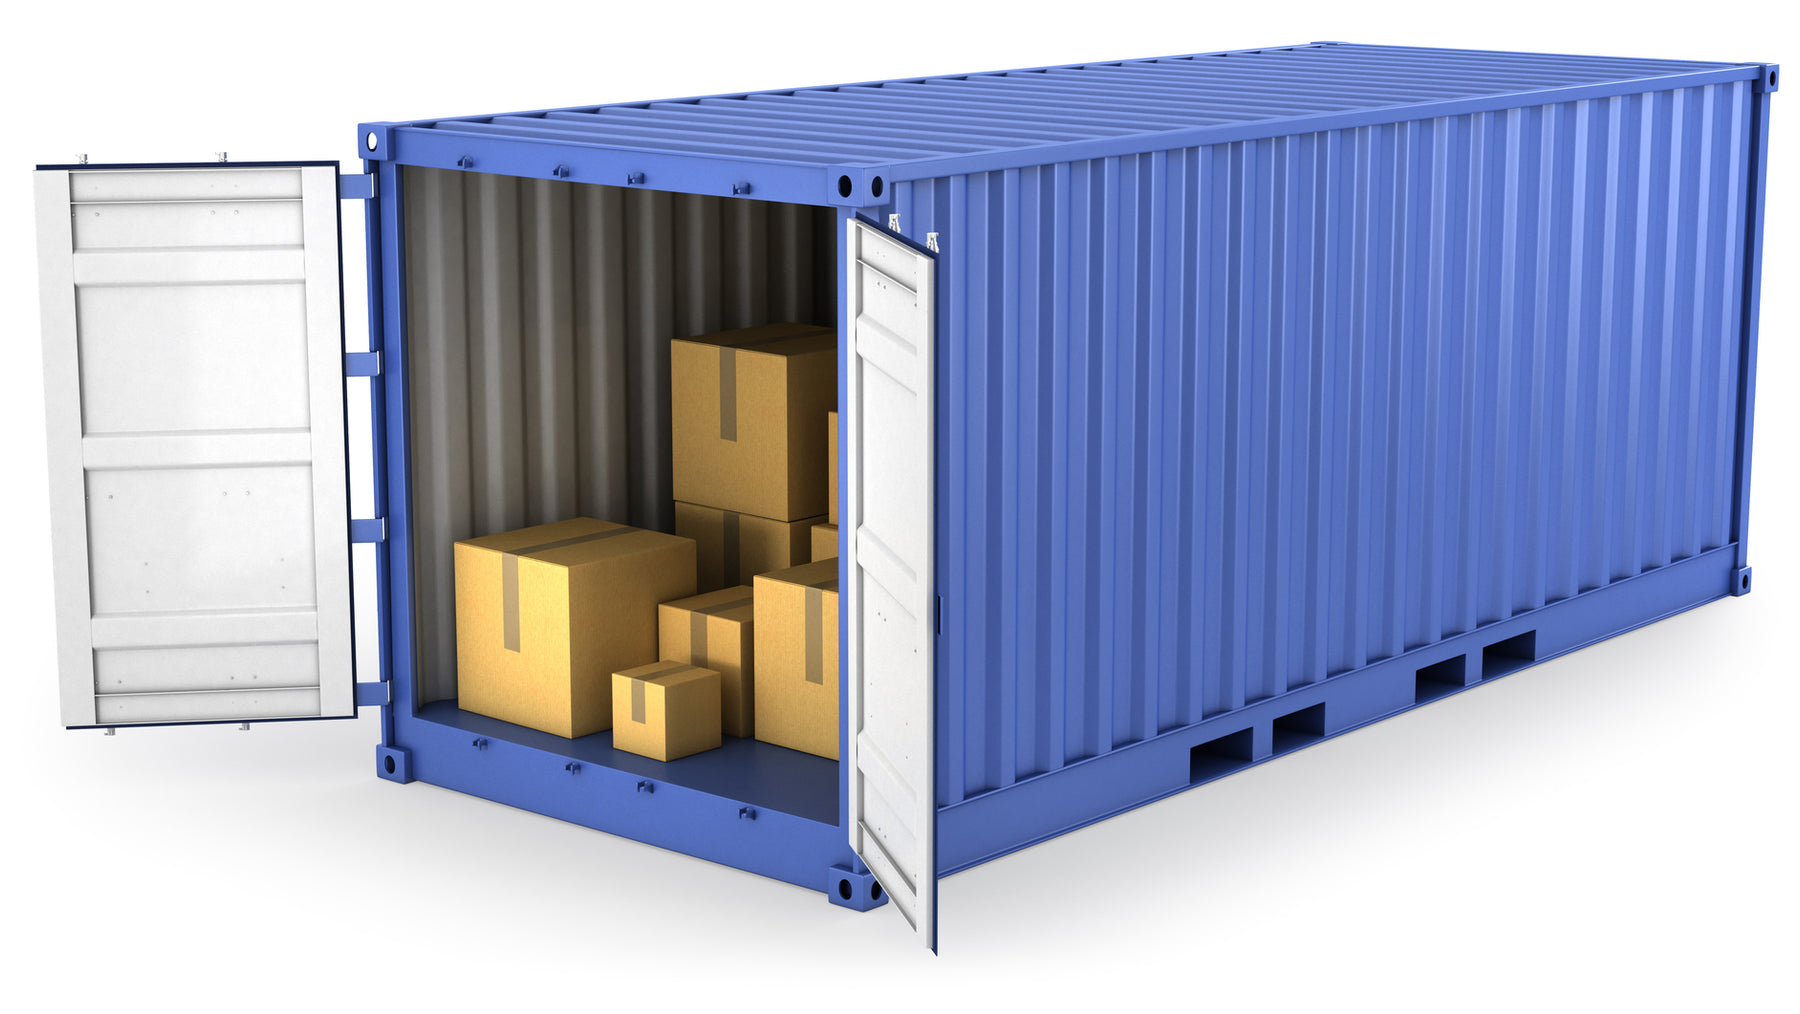 Cargo Transportation